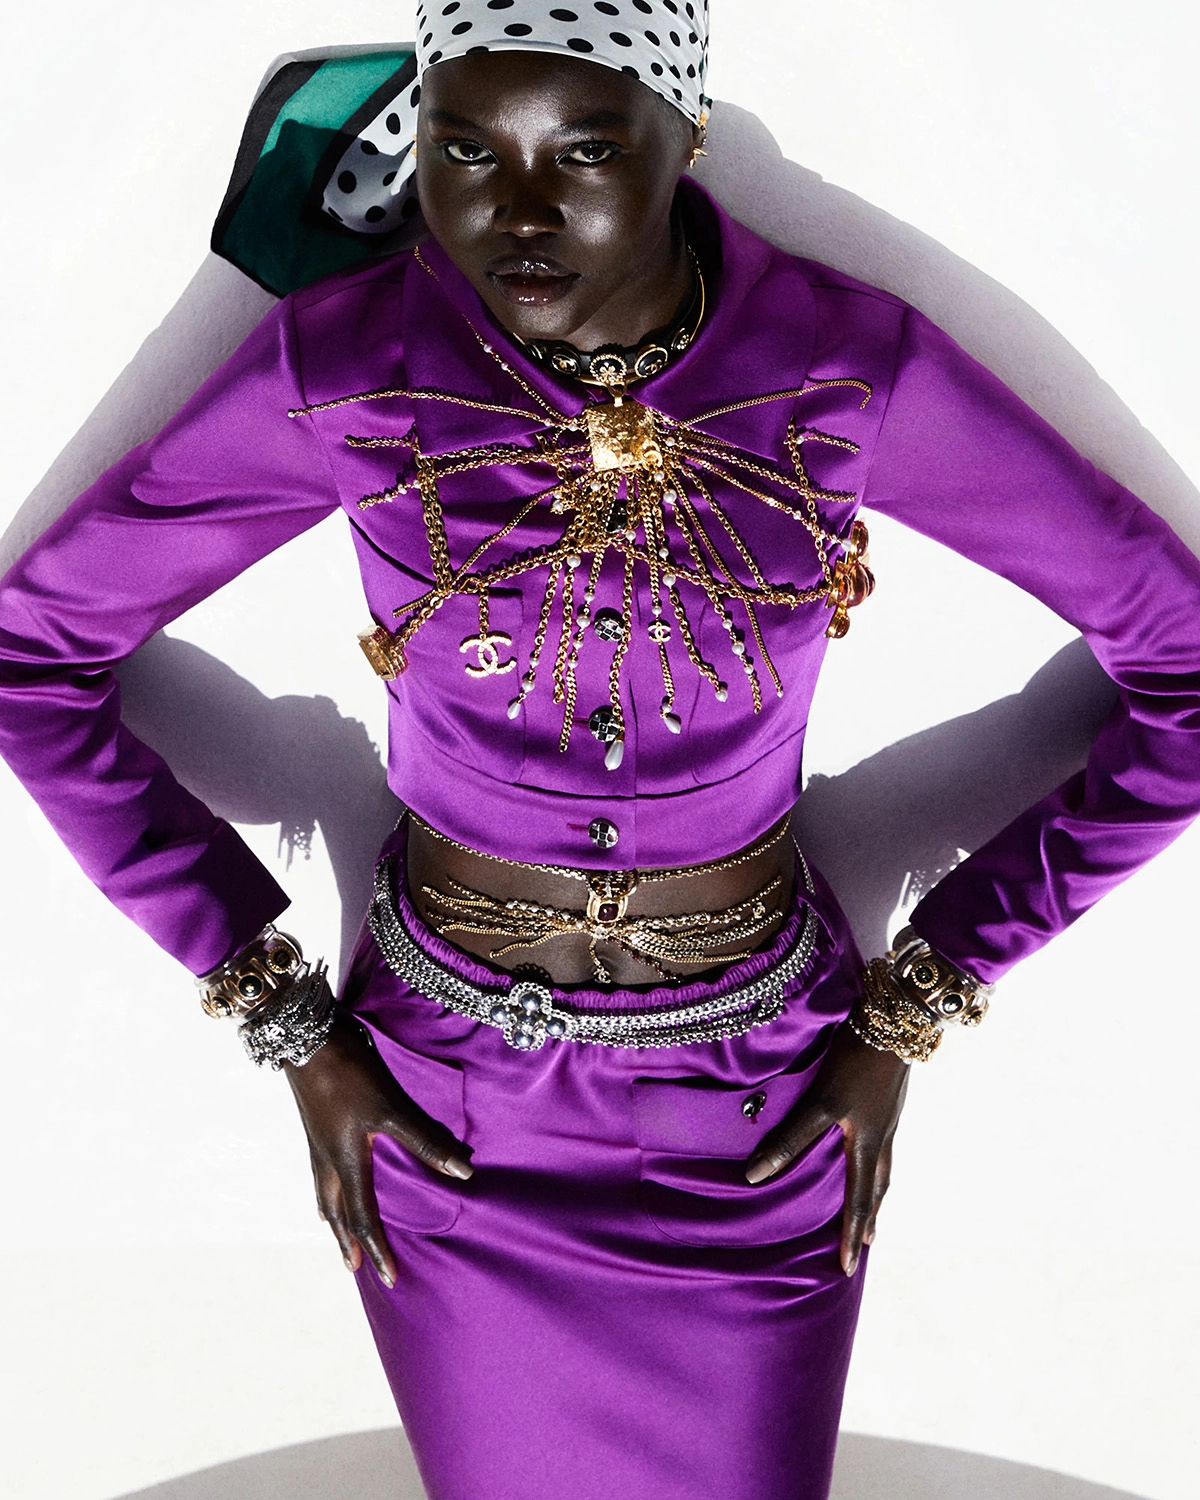 Adut Akech covers Vogue Italia June 2022 by Vito Fernicola